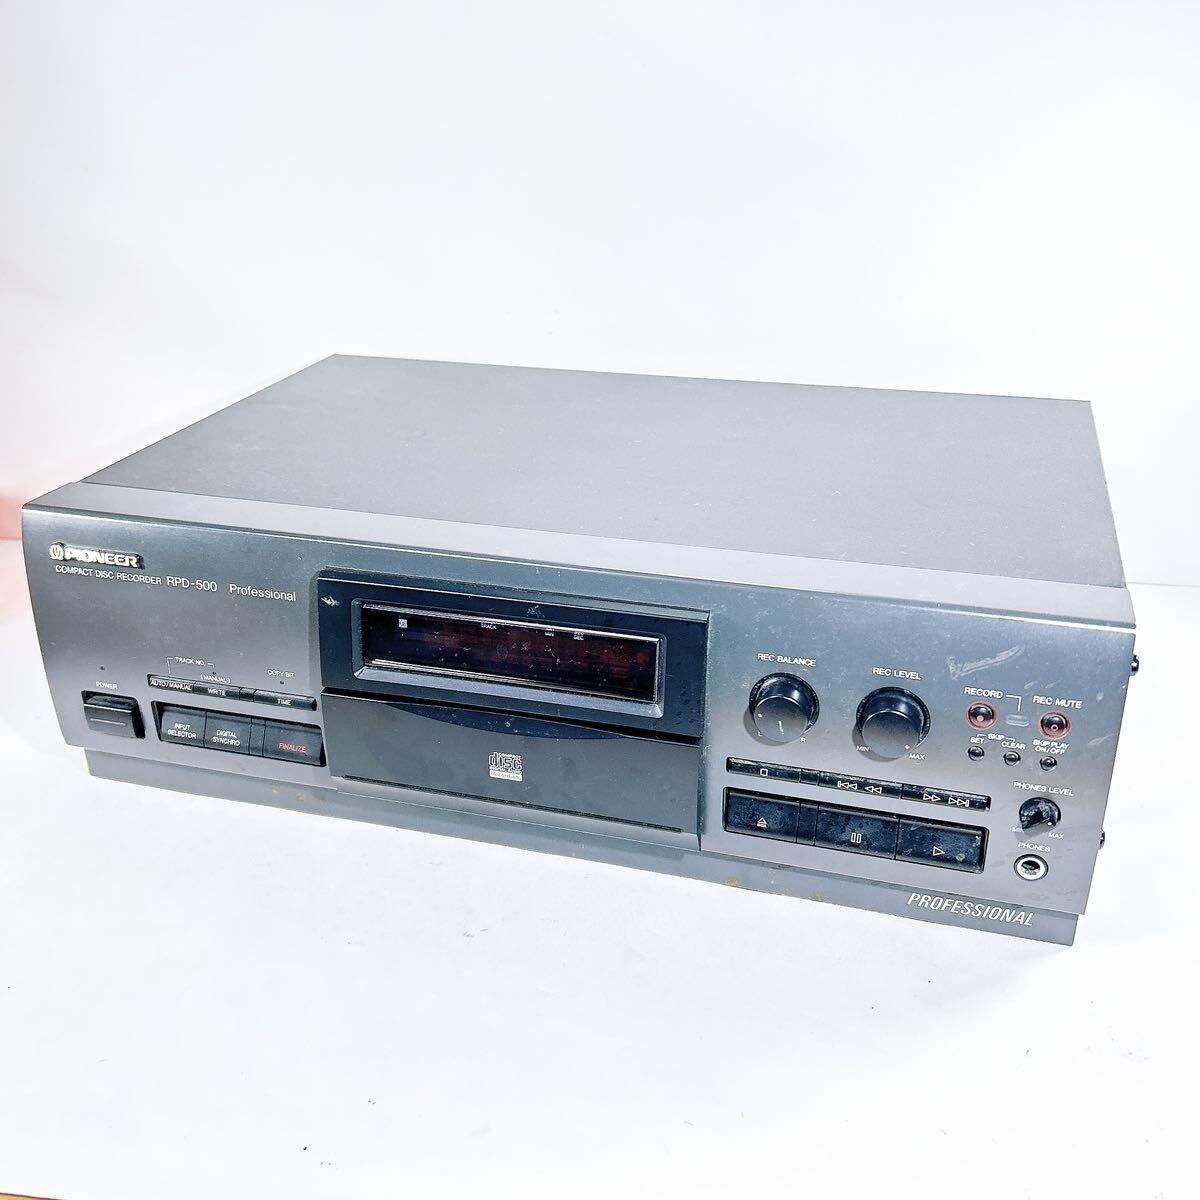 ★通電確認済み★ ◇オーディオ機器PIONEER パイオニア RPD-500 COMPACT DISC RECORDER コンパクトディスクレコーダー CDレコーダー